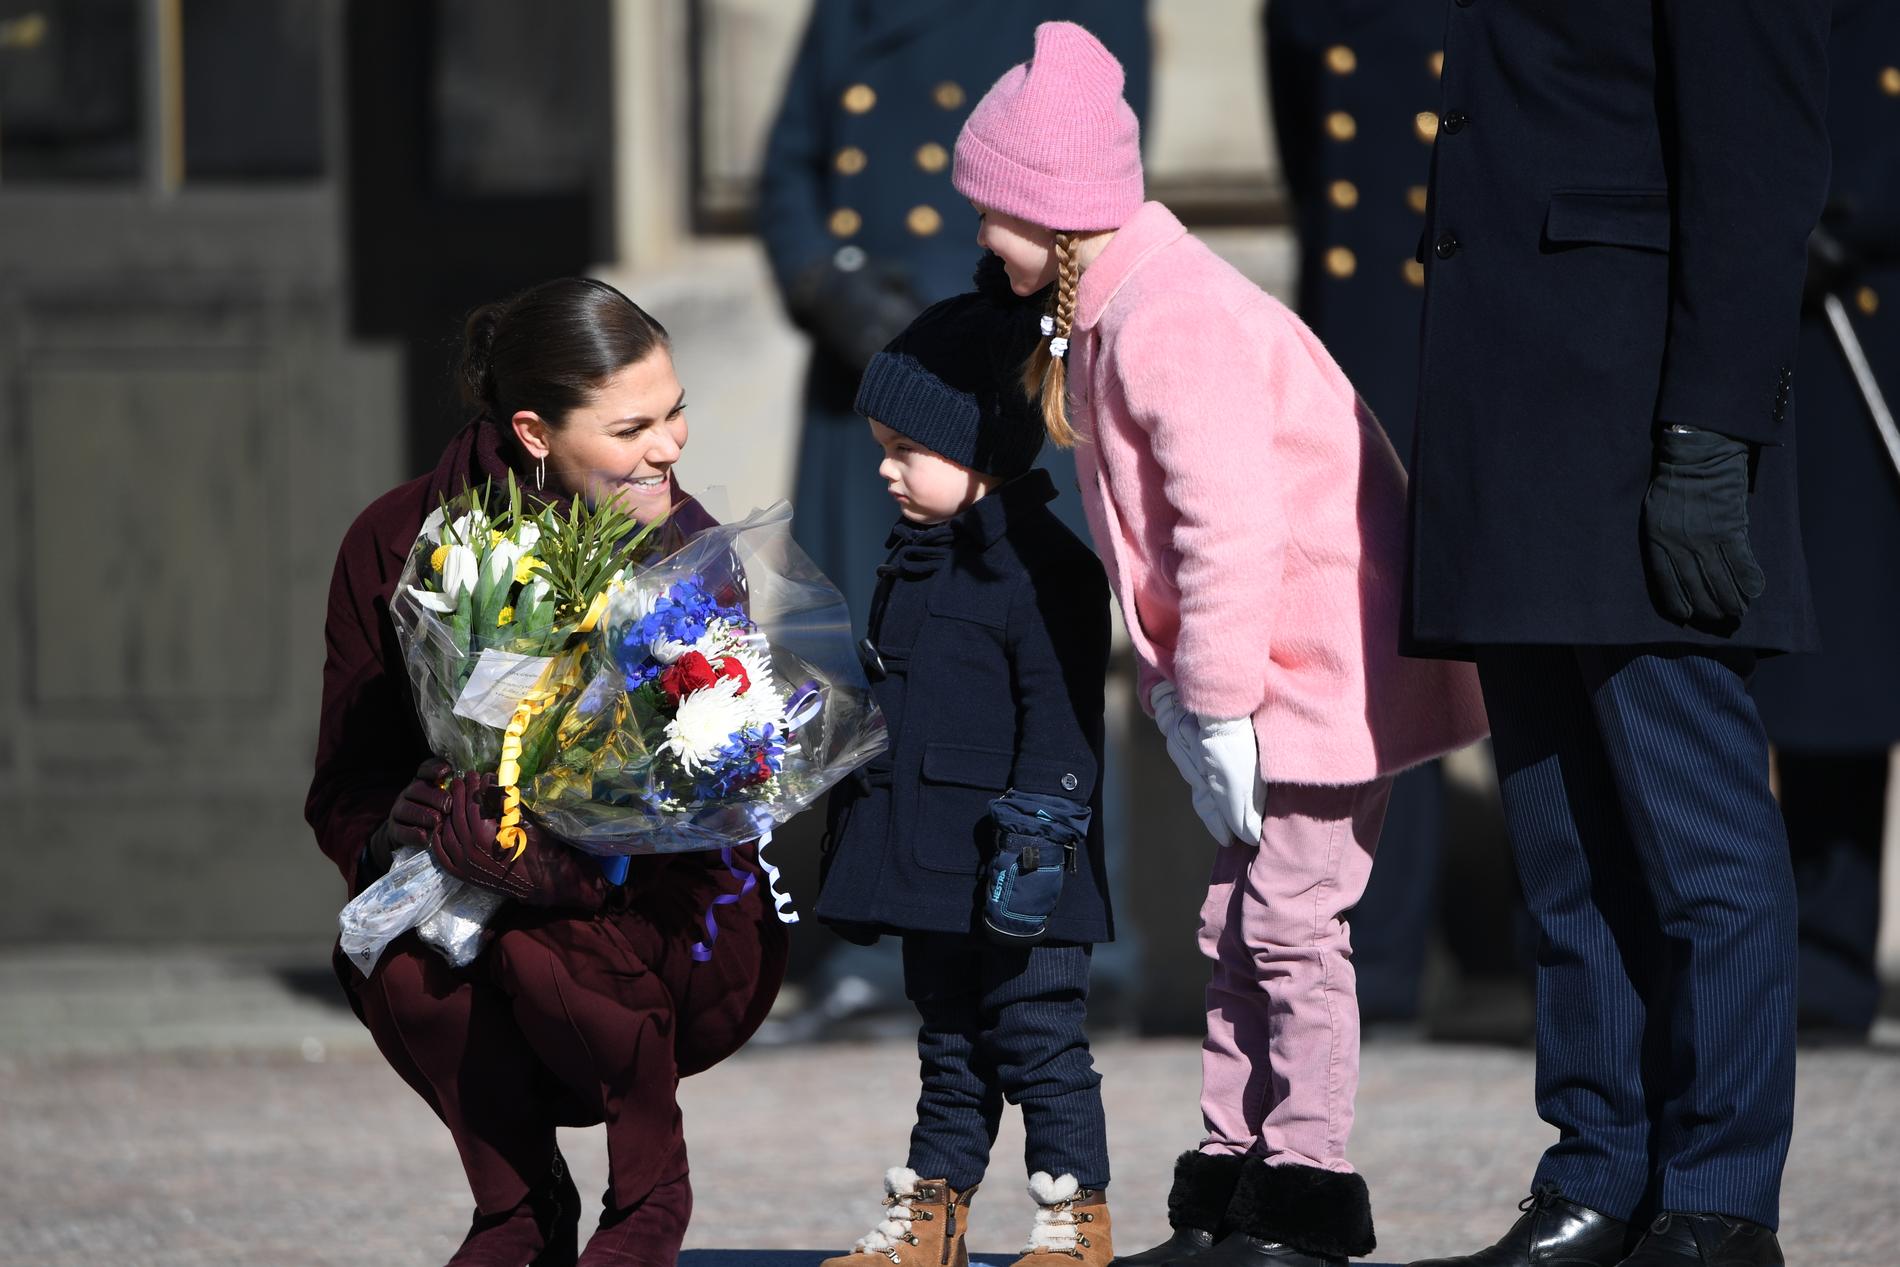 Kronprinsessan Victorias namnsdag firades på Stockholms slott på tisdagen. Hela familjen fanns med henne på inre borggården vid uppvaktandet.